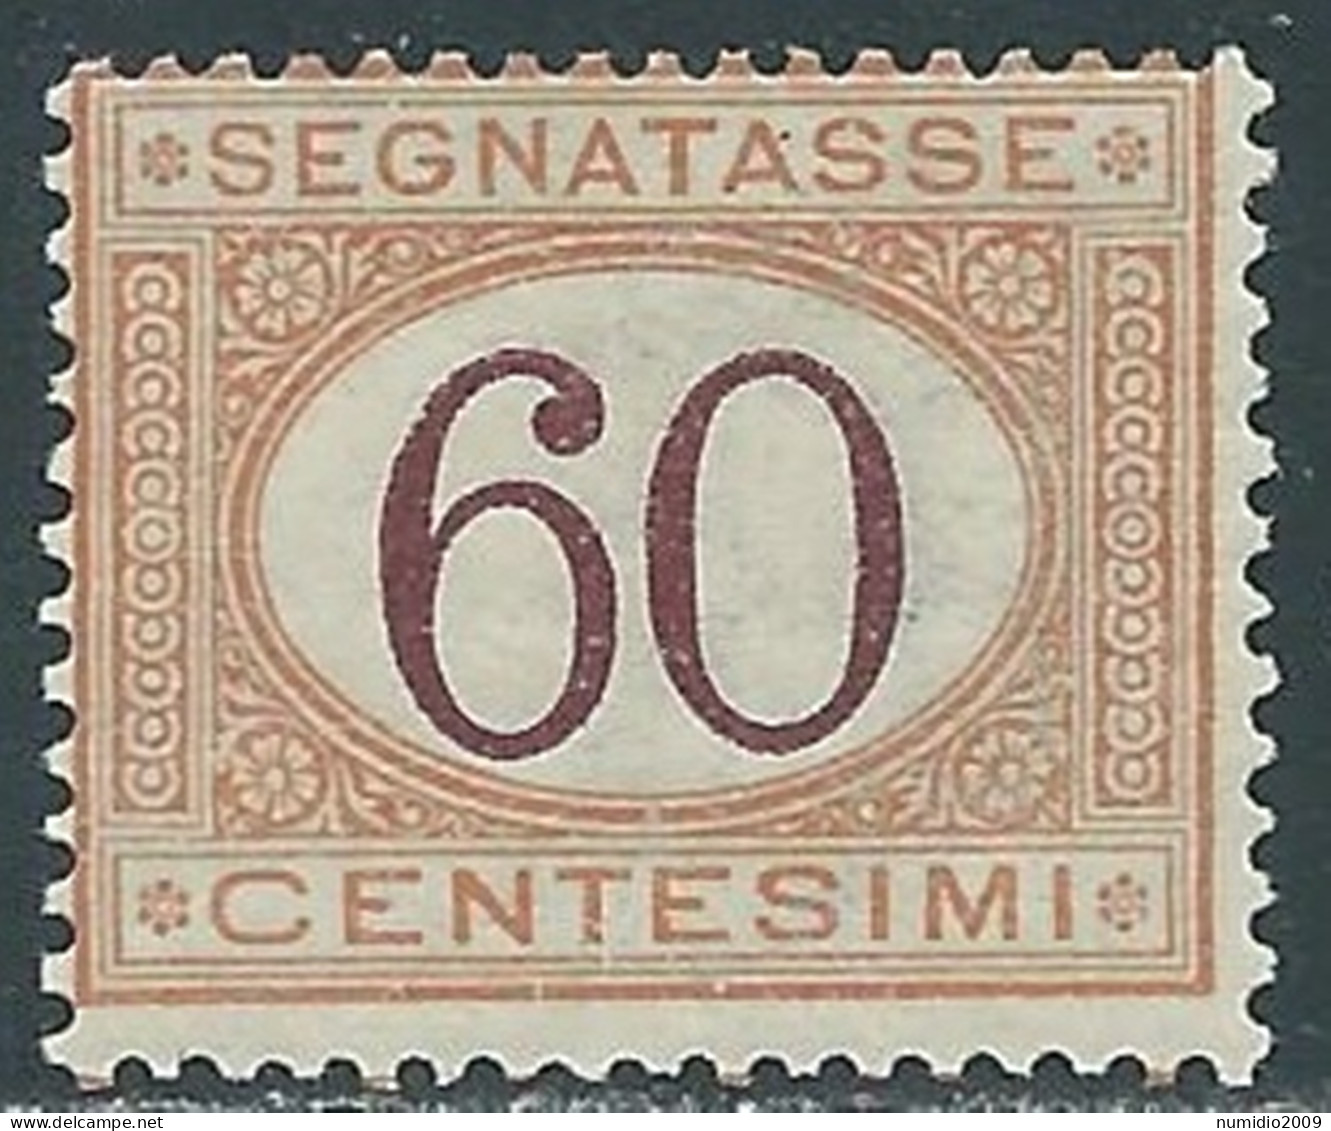 1924 REGNO SEGNATASSE 60 CENT MNH ** - P29-5 - Postage Due